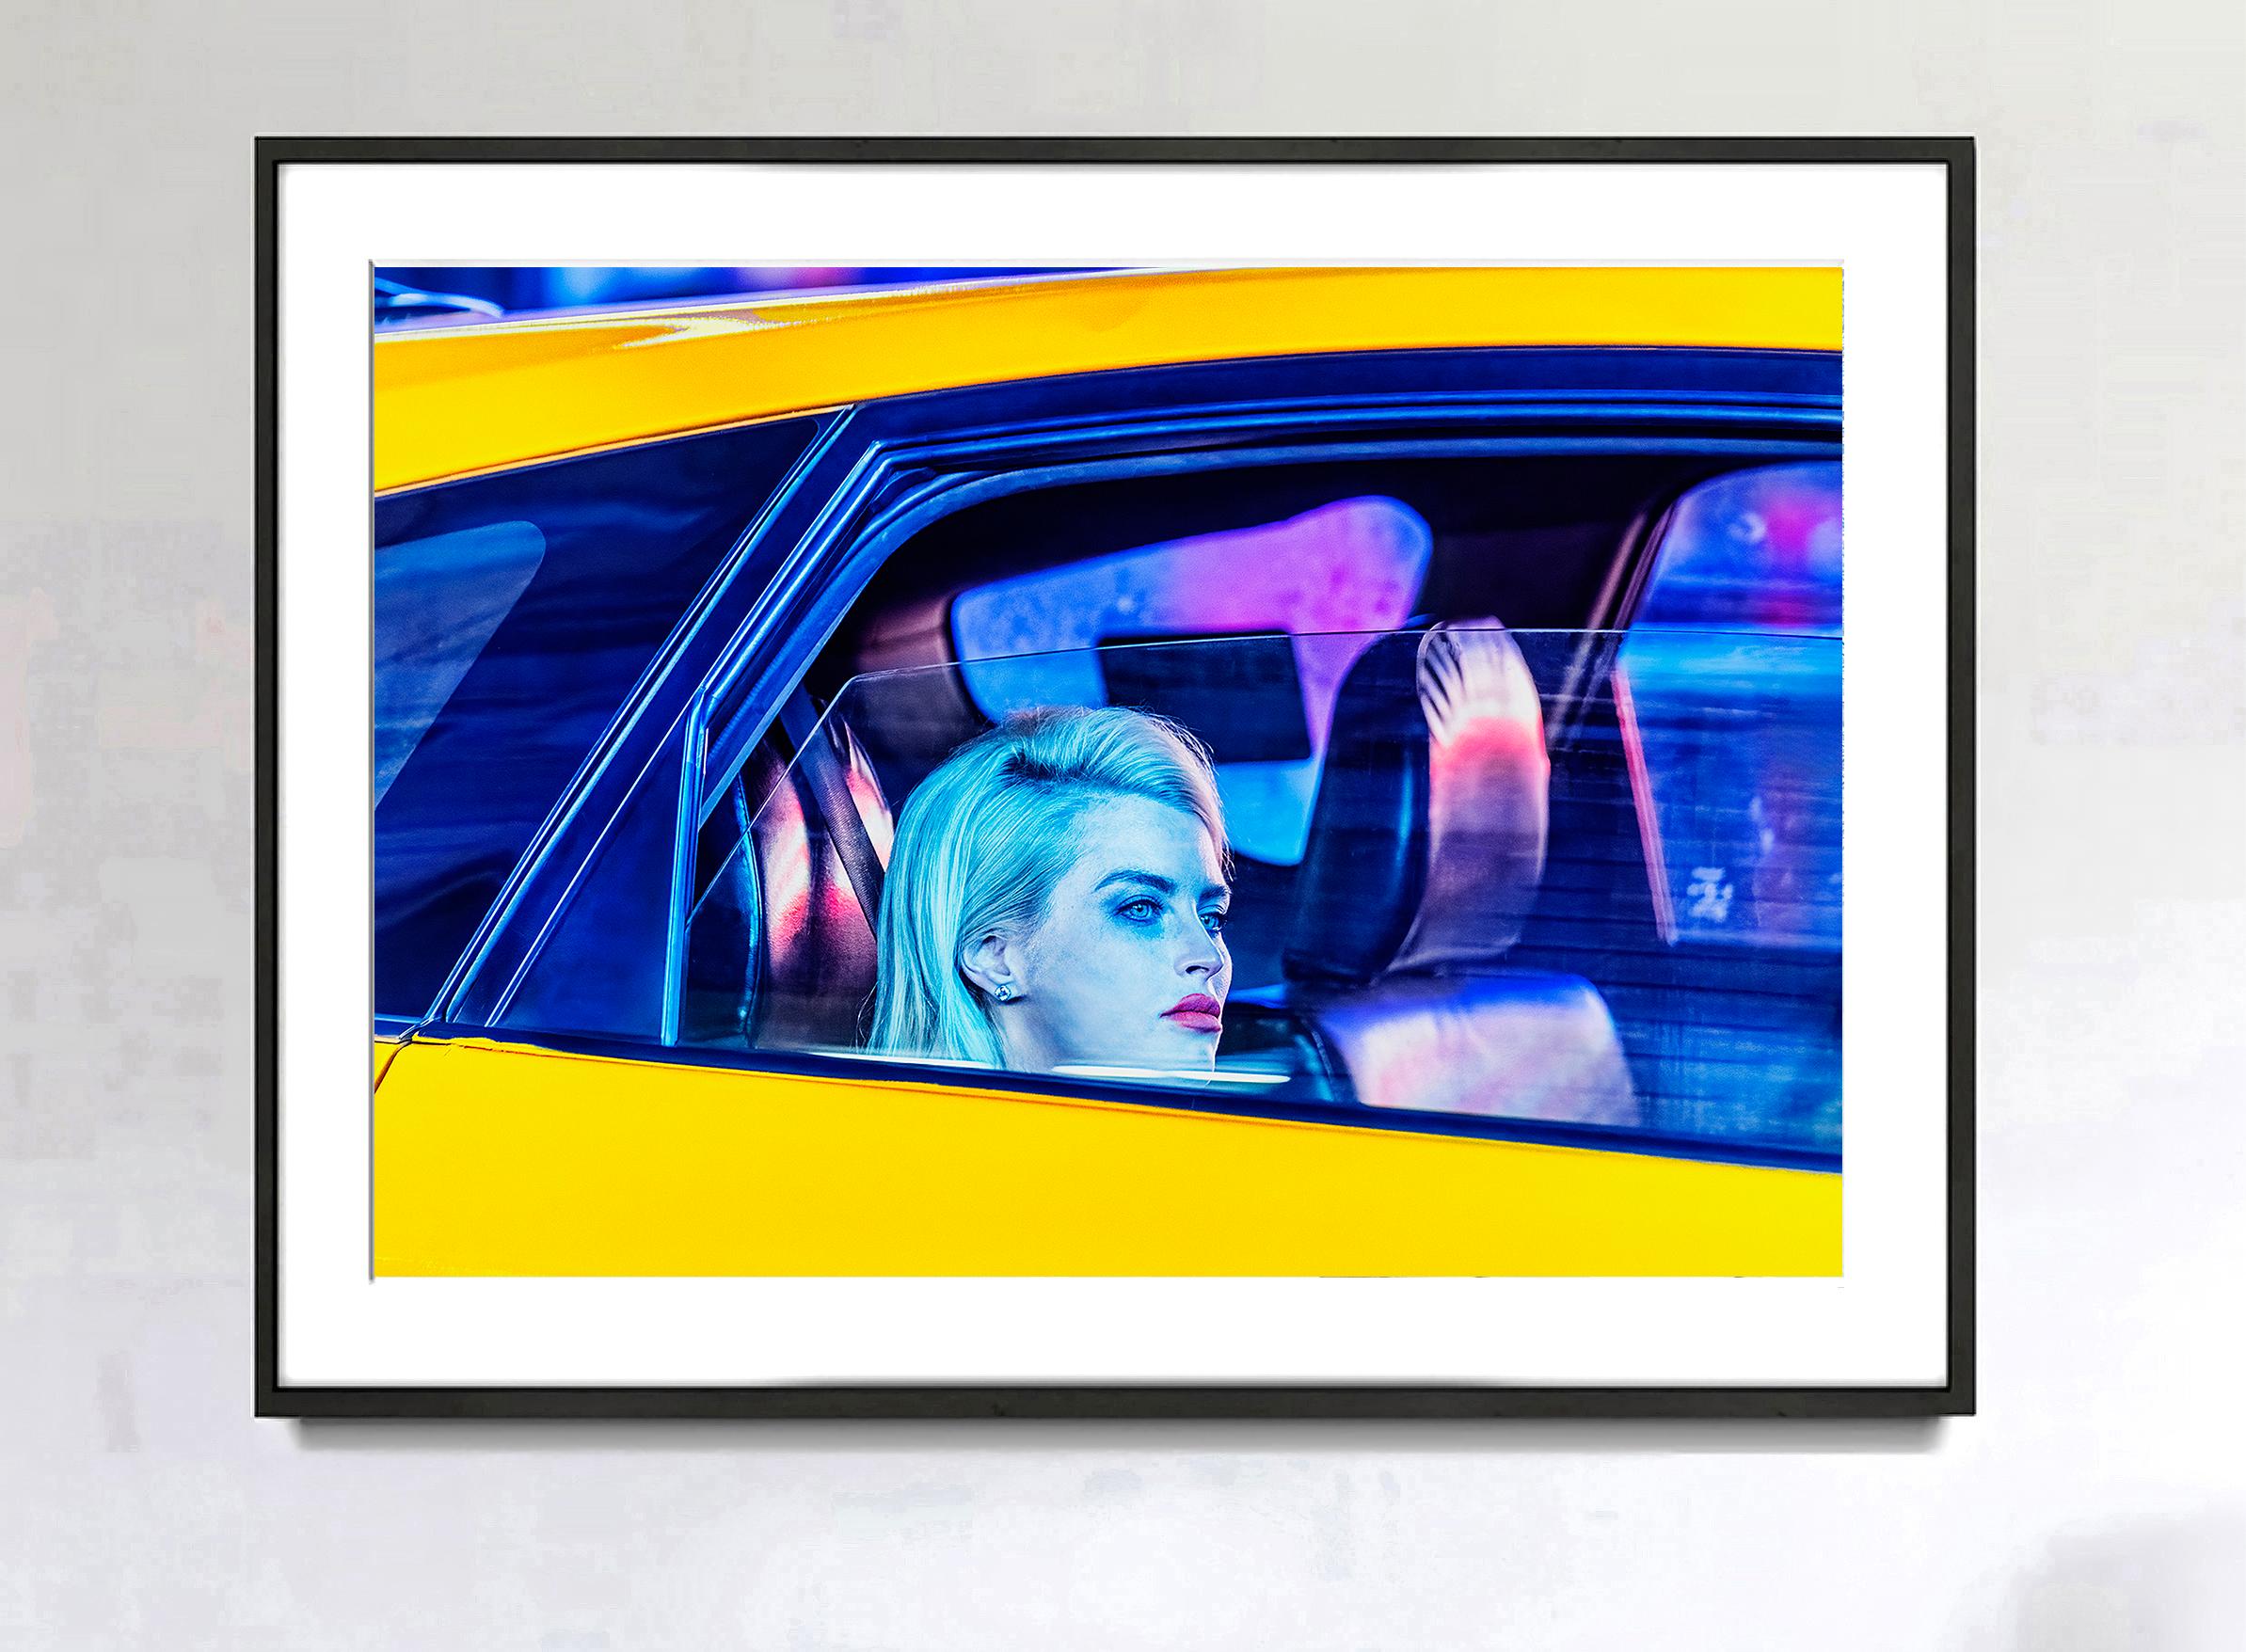 Die für den Straßenfotografen Mitchell Funk typische Farb- und Designfotografie verschmilzt in diesem introspektiven New Yorker Taxiporträt mit dem Fotojournalismus. 
Unterschrieben,  datiert, nummeriert unten rechts  2/15 Später gedruckt, andere